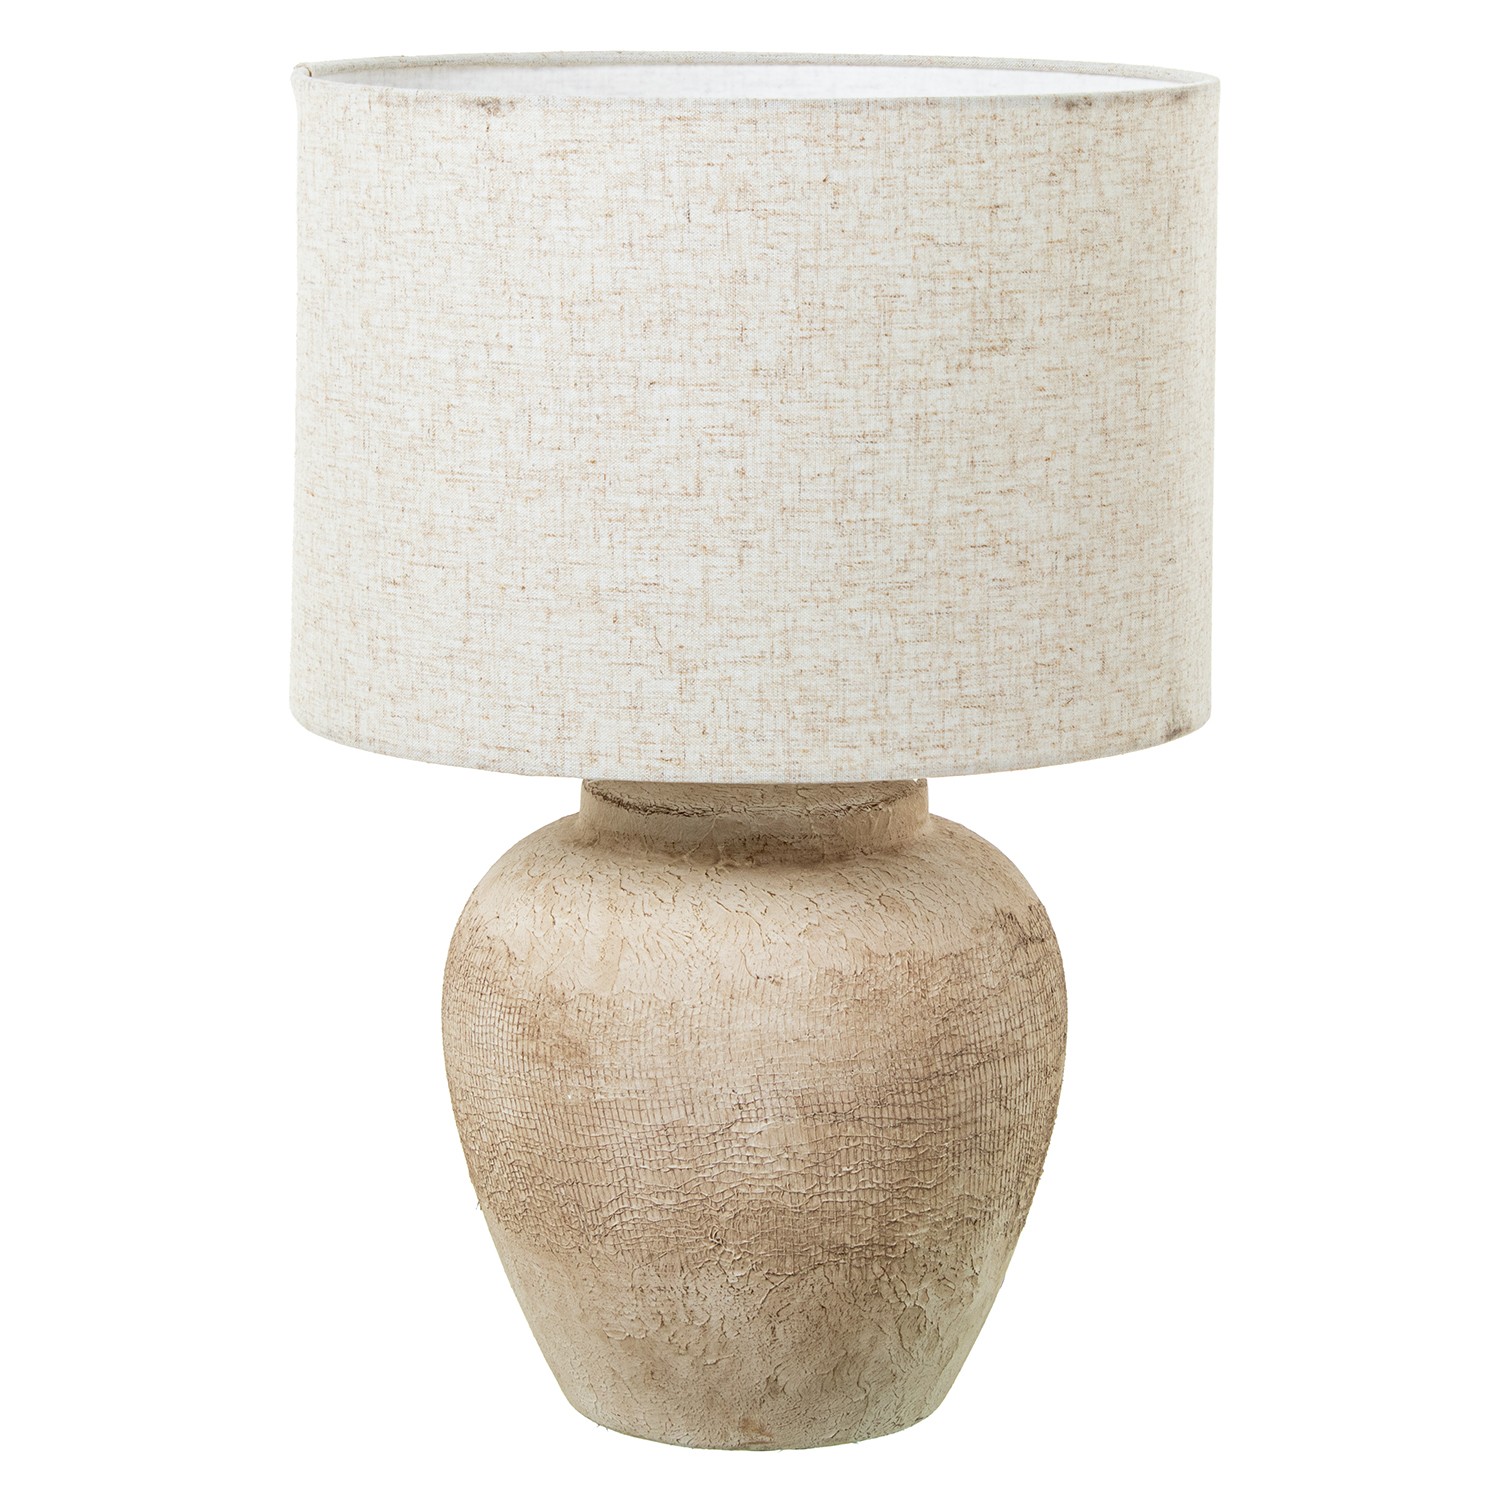 35661-lampara-ceramica-texturas-lino.jfif